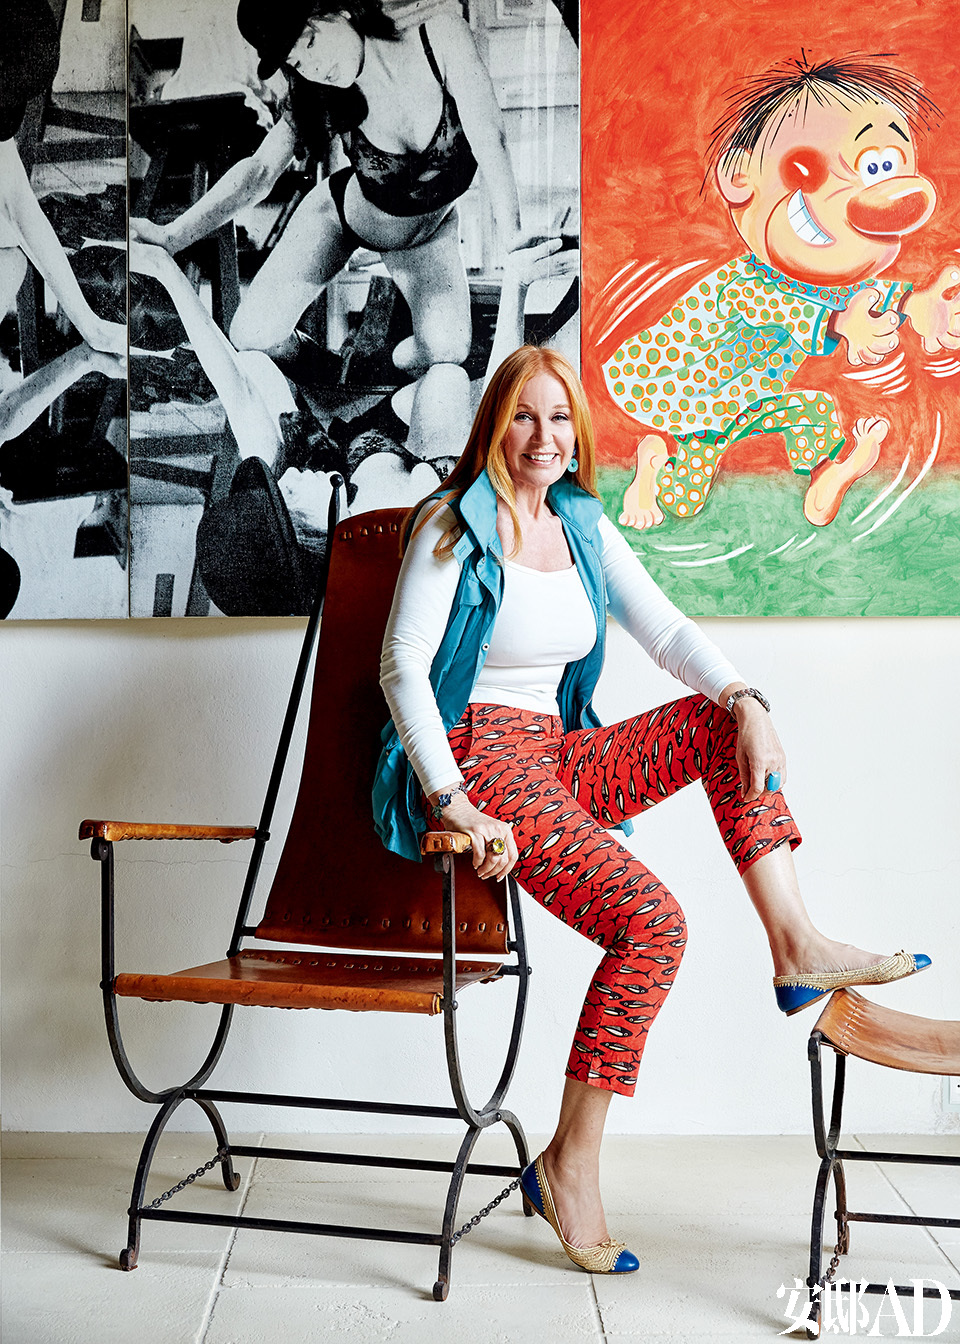 坐在扶手上的Suzanne，扶手椅和脚凳均来自André Arbus。后侧的油画来自Julia Wachtel。主人: Suzanne Syz（苏珊·塞兹），瑞士珠宝设计师，20世纪80年代活跃于纽约，与安迪·沃霍尔、巴斯奎特（Jean Michel Basquiat）、施纳贝尔（Julian Schnabel）、杰夫·昆斯（Jeff Koons）等知名艺术家过从甚密。近年搬到日内瓦，她的作品经常出现在各大秀展：棕榈滩珠宝与古董展（Palm Beach Jewelery Show），“军械库展会”（Armory Show），日内瓦艺术展（Art Genève）和伦敦大师展（Masterpiece London）；对艺术收藏保持热情的她，也常在PAD、弗里兹艺术博览会（Frieze）、巴塞尔艺术展（Art Basel）、TEFAF等各大艺廊和艺术展上寻找新藏品。